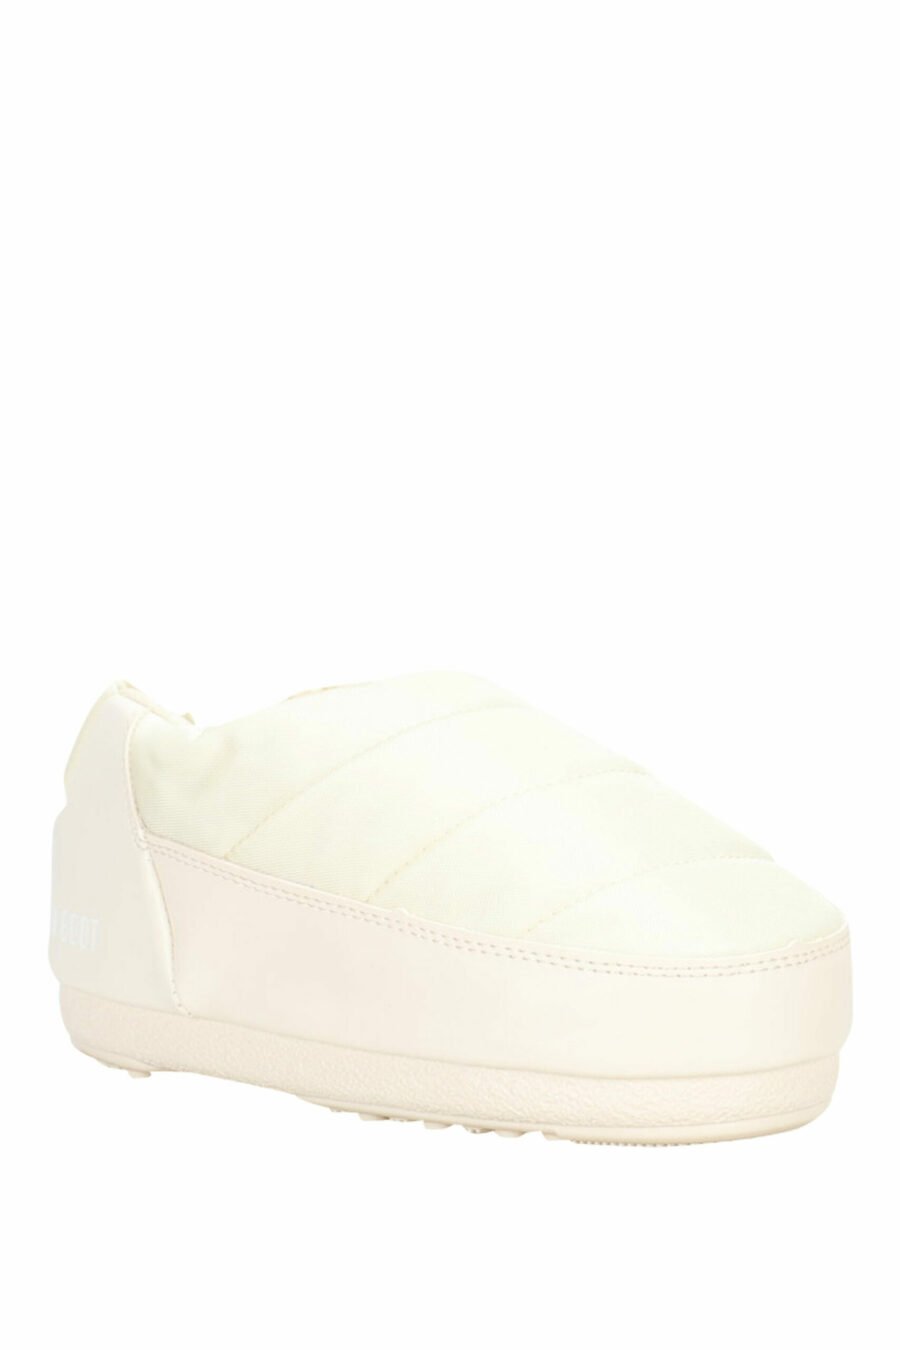 Weiße Sandalen mit weißem Mini-Logo - 8050032004080 2 skaliert